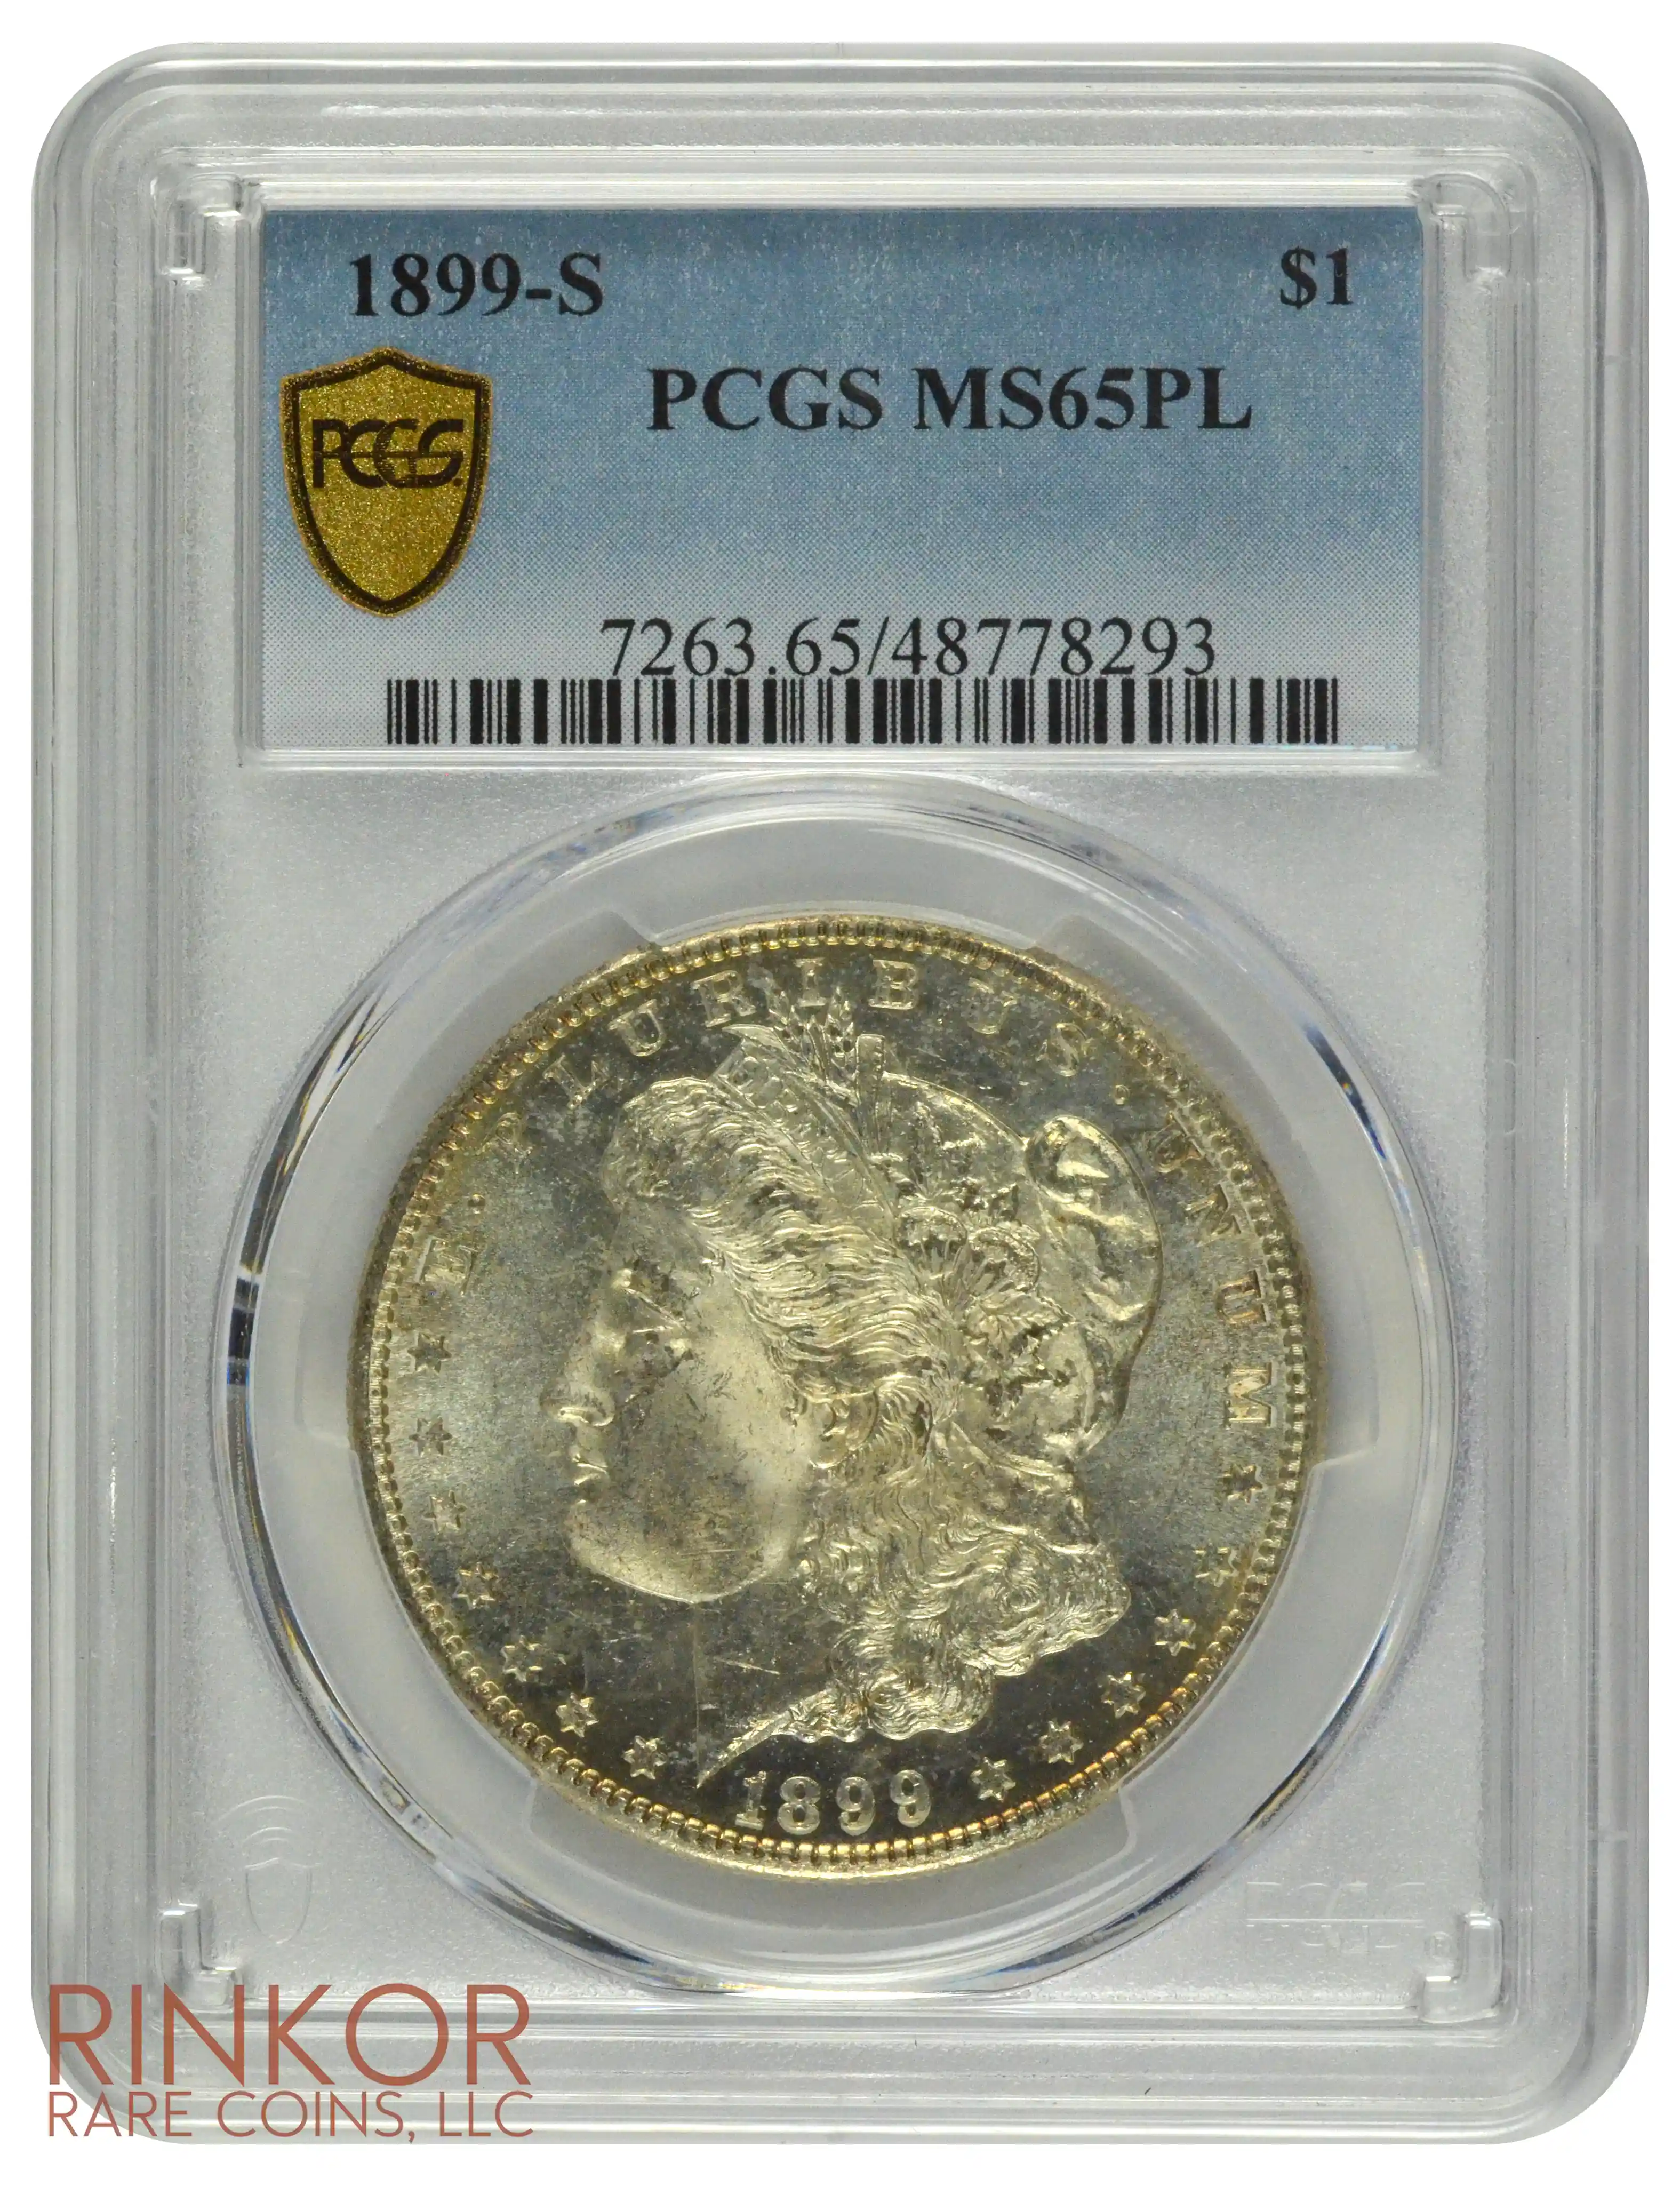 1899-S $1 PCGS MS 65 PL